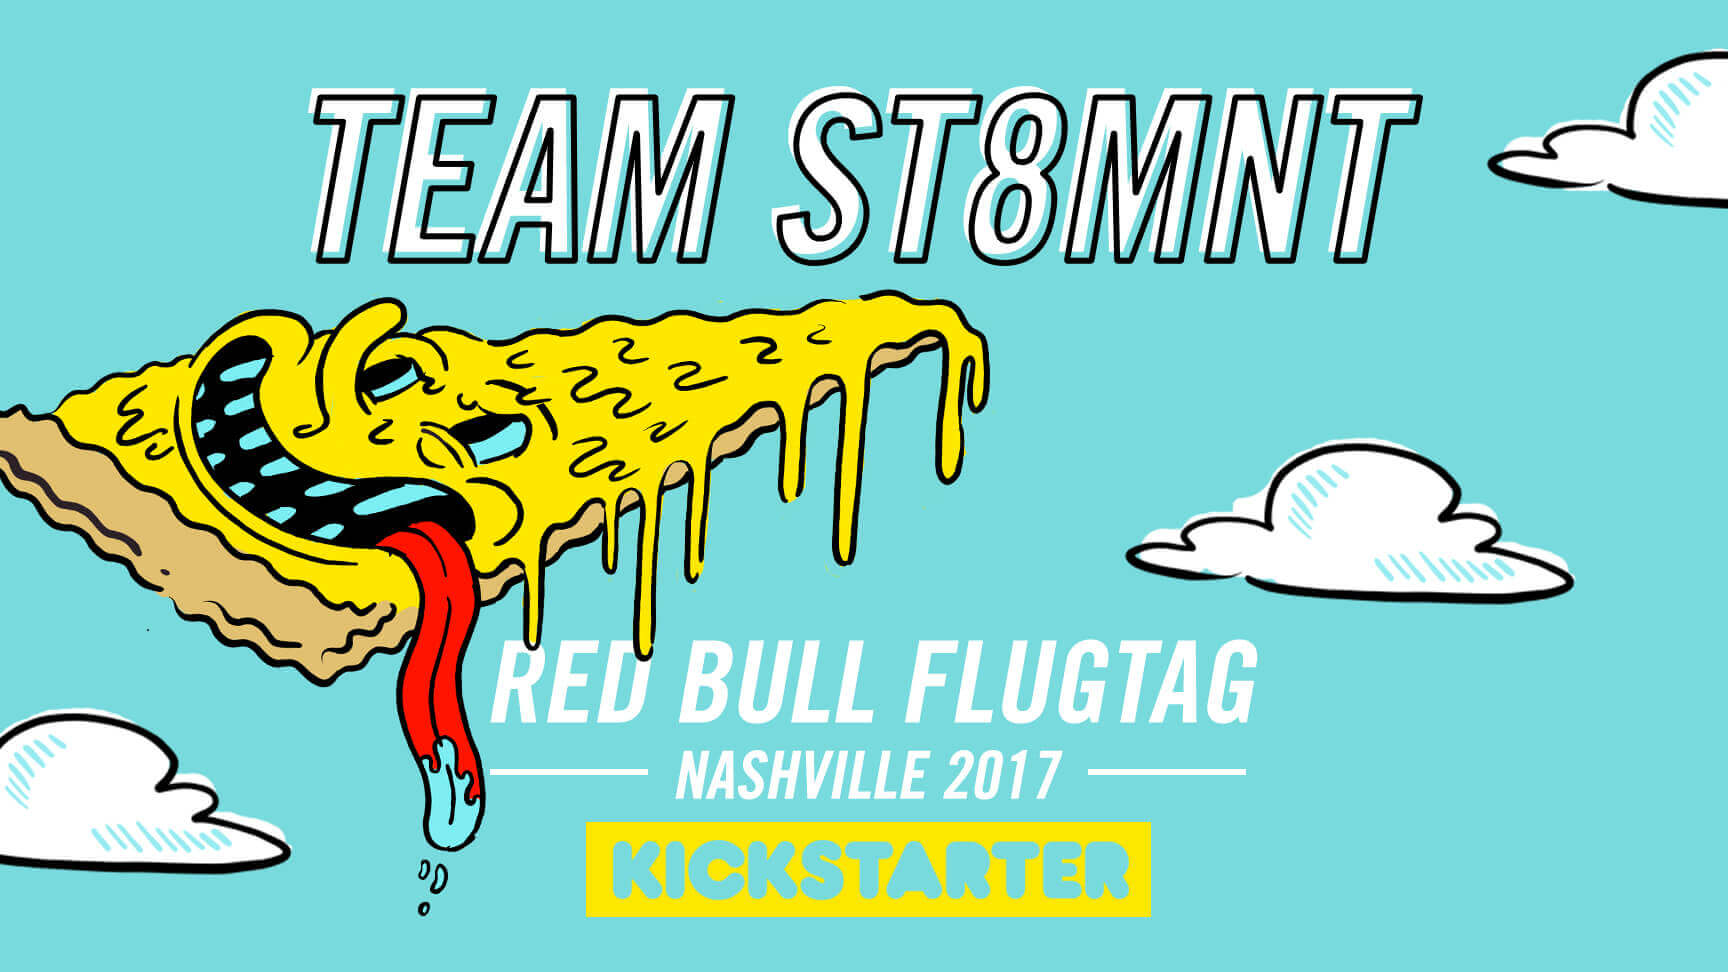 Redbull Kickstarter Graphic for Team ST8MNT and the 2017 RedBull Flugtag Nashville